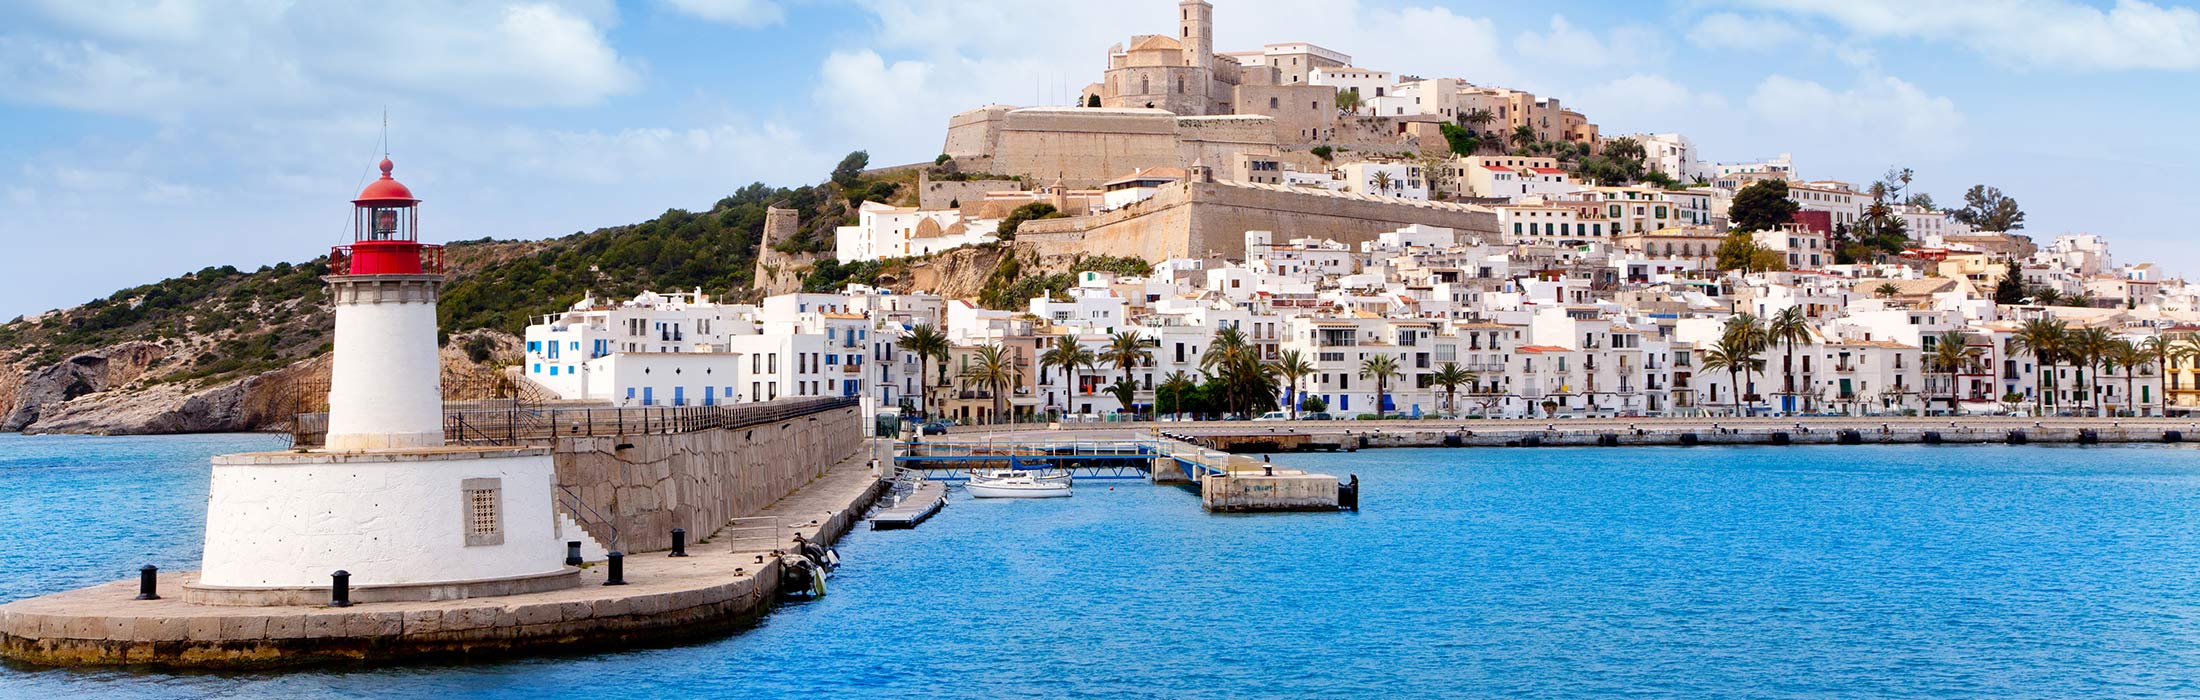 top yacht charter destinations mediterranean spain ibiza top slider 1